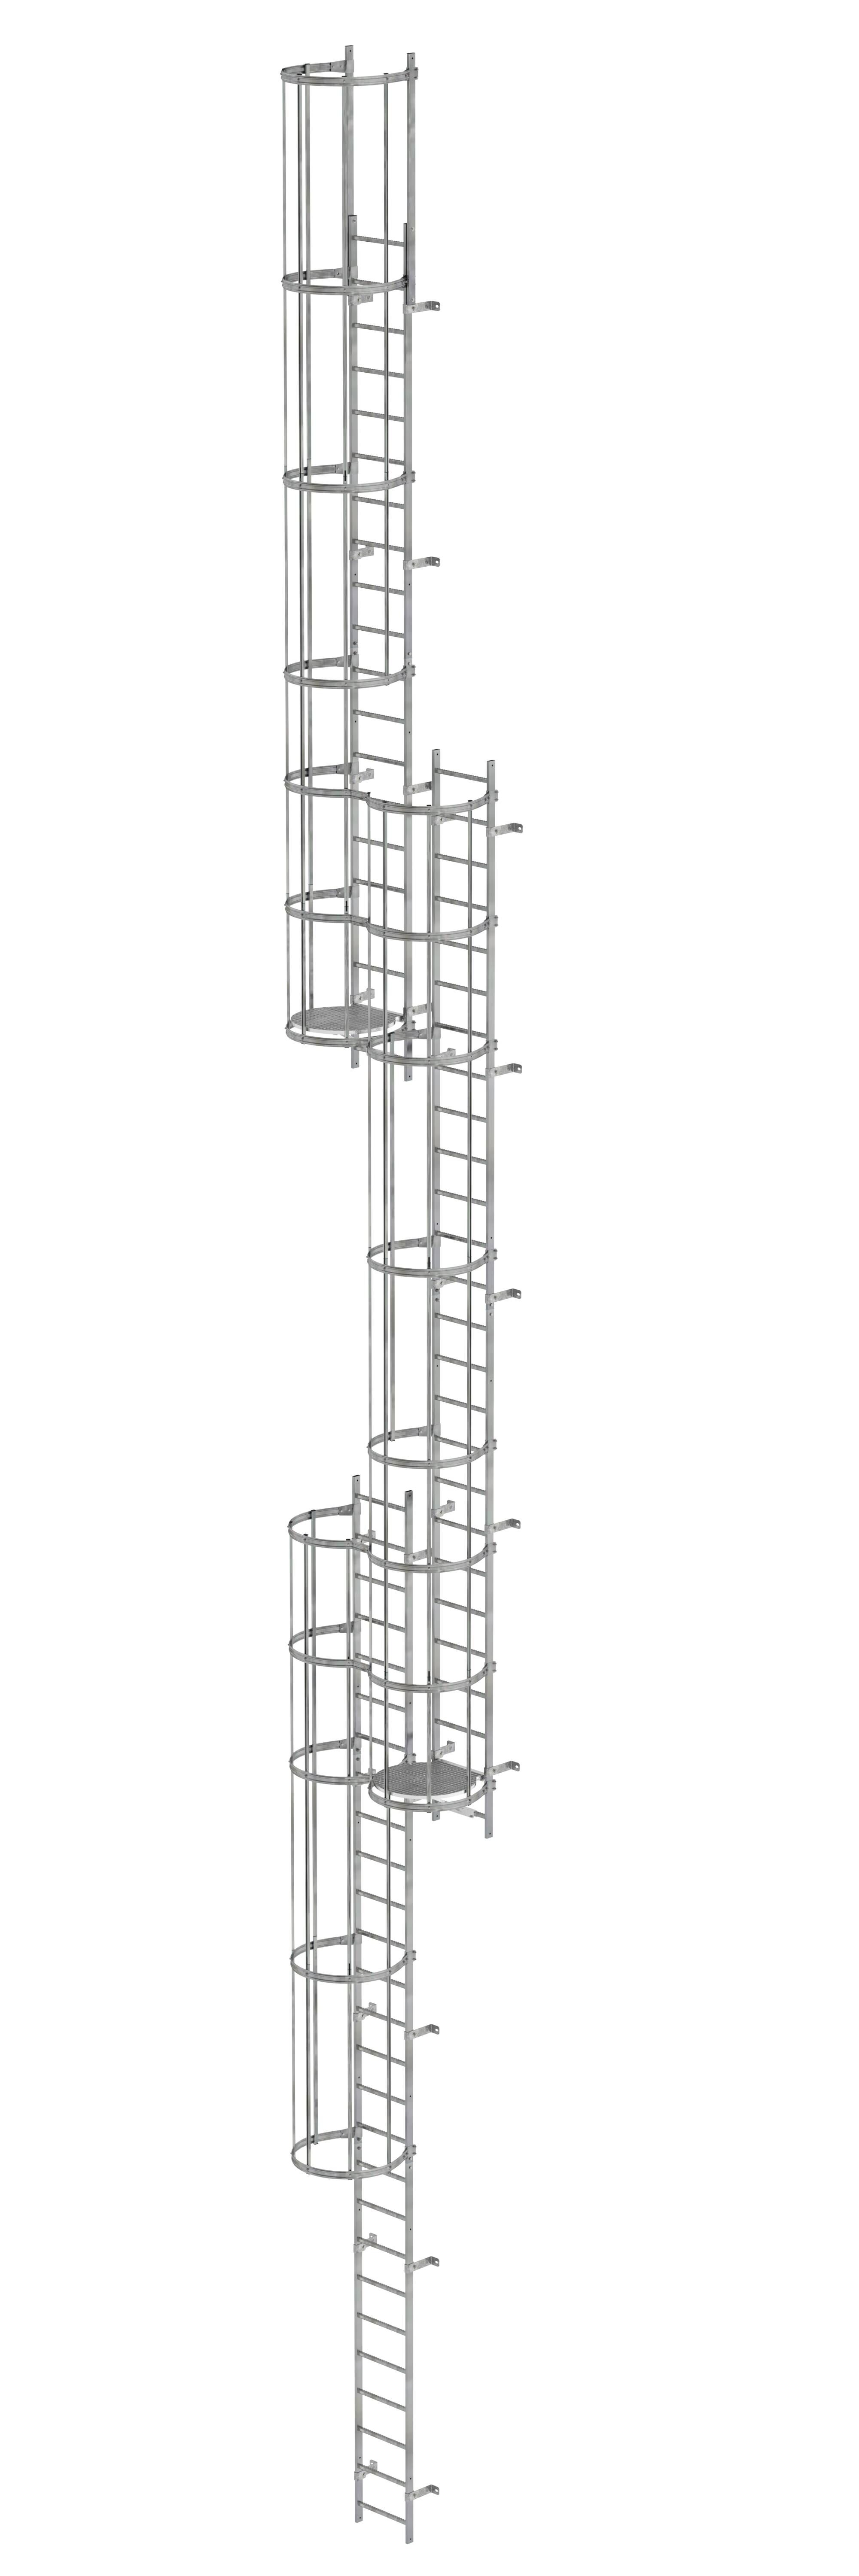 Mehrzügige Steigleiter mit Rückenschutz (Notleiter) Stahl verzinkt 17,16m